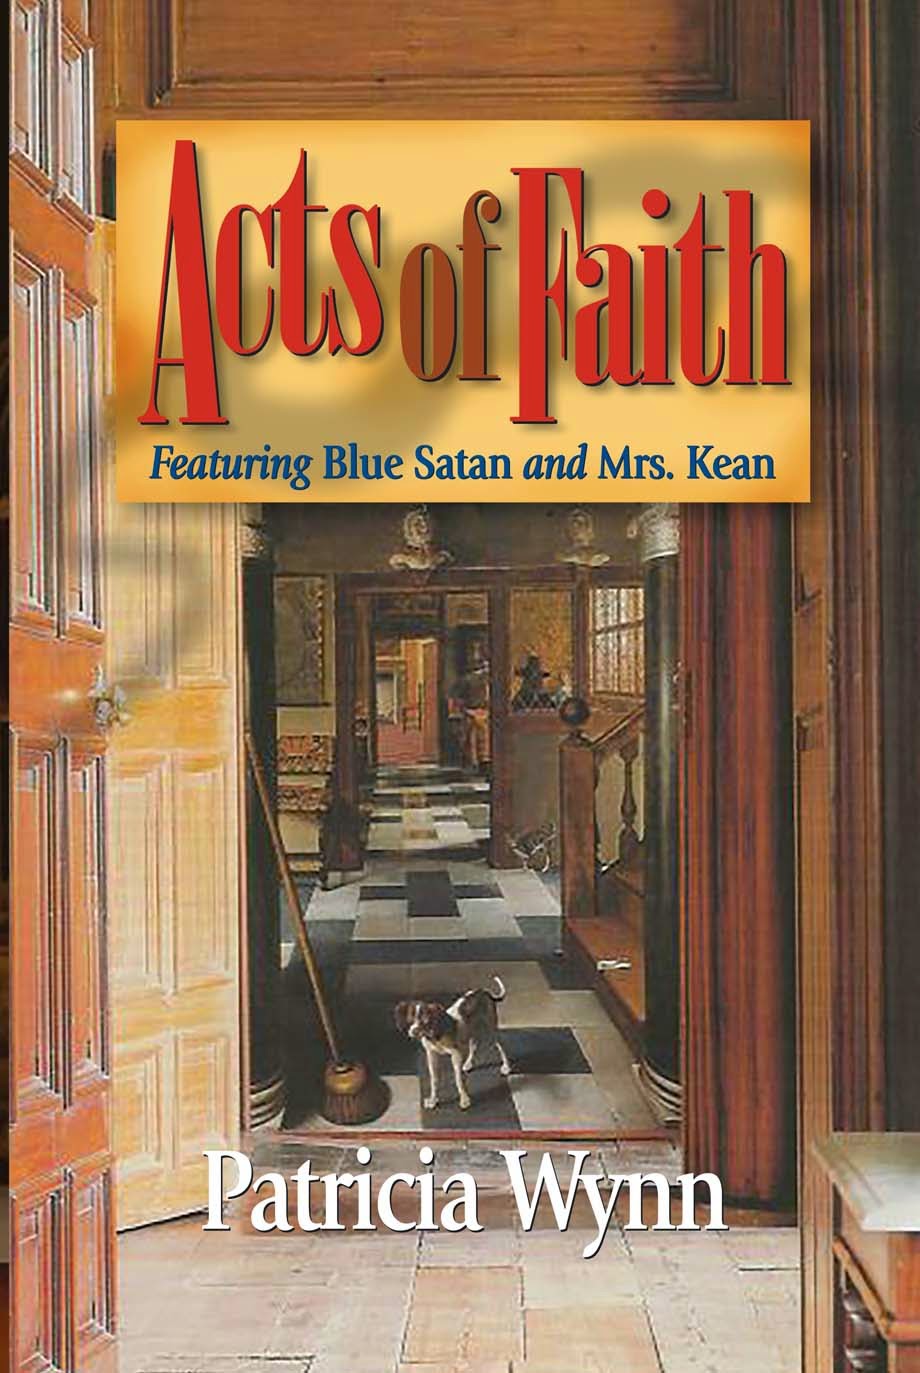 http://www.amazon.com/Acts-Faith-Blue-Satan-Mystery/dp/1935421077